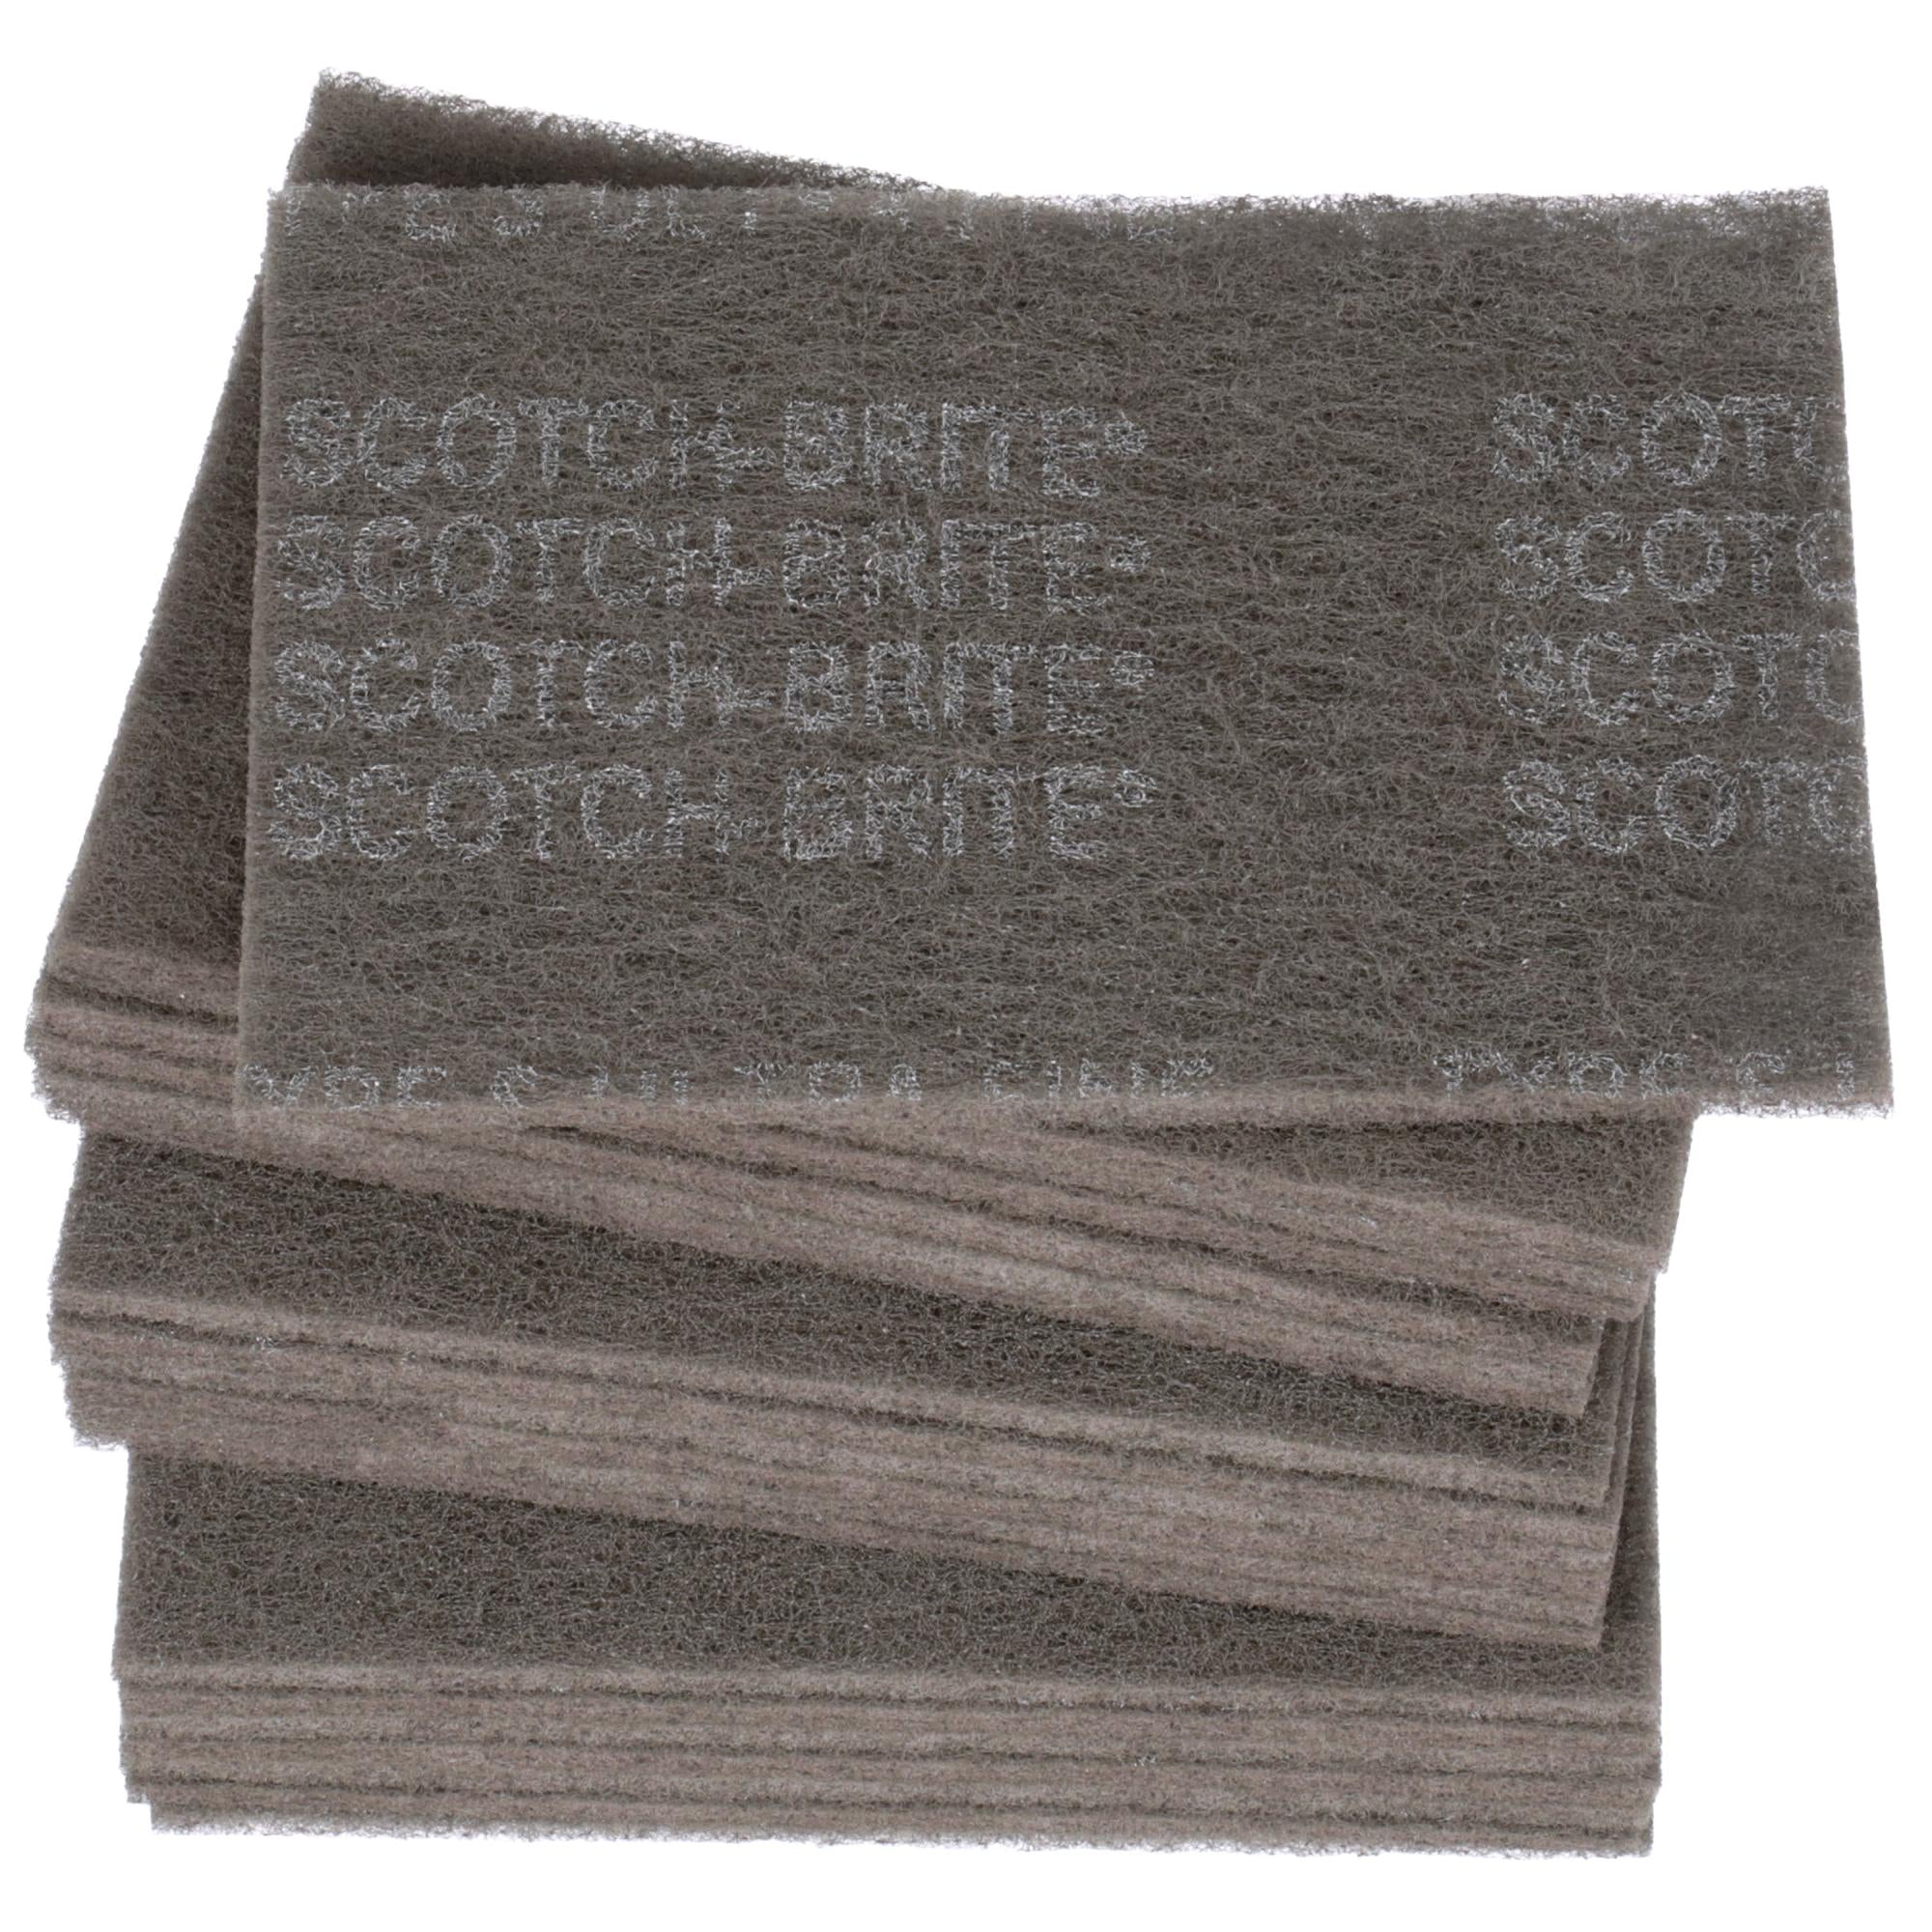 Scotch-Brite Hand Pad 7448, HP-HP, SiC Ultra Fine, Gray, 6 in x 9 in,
20/Carton